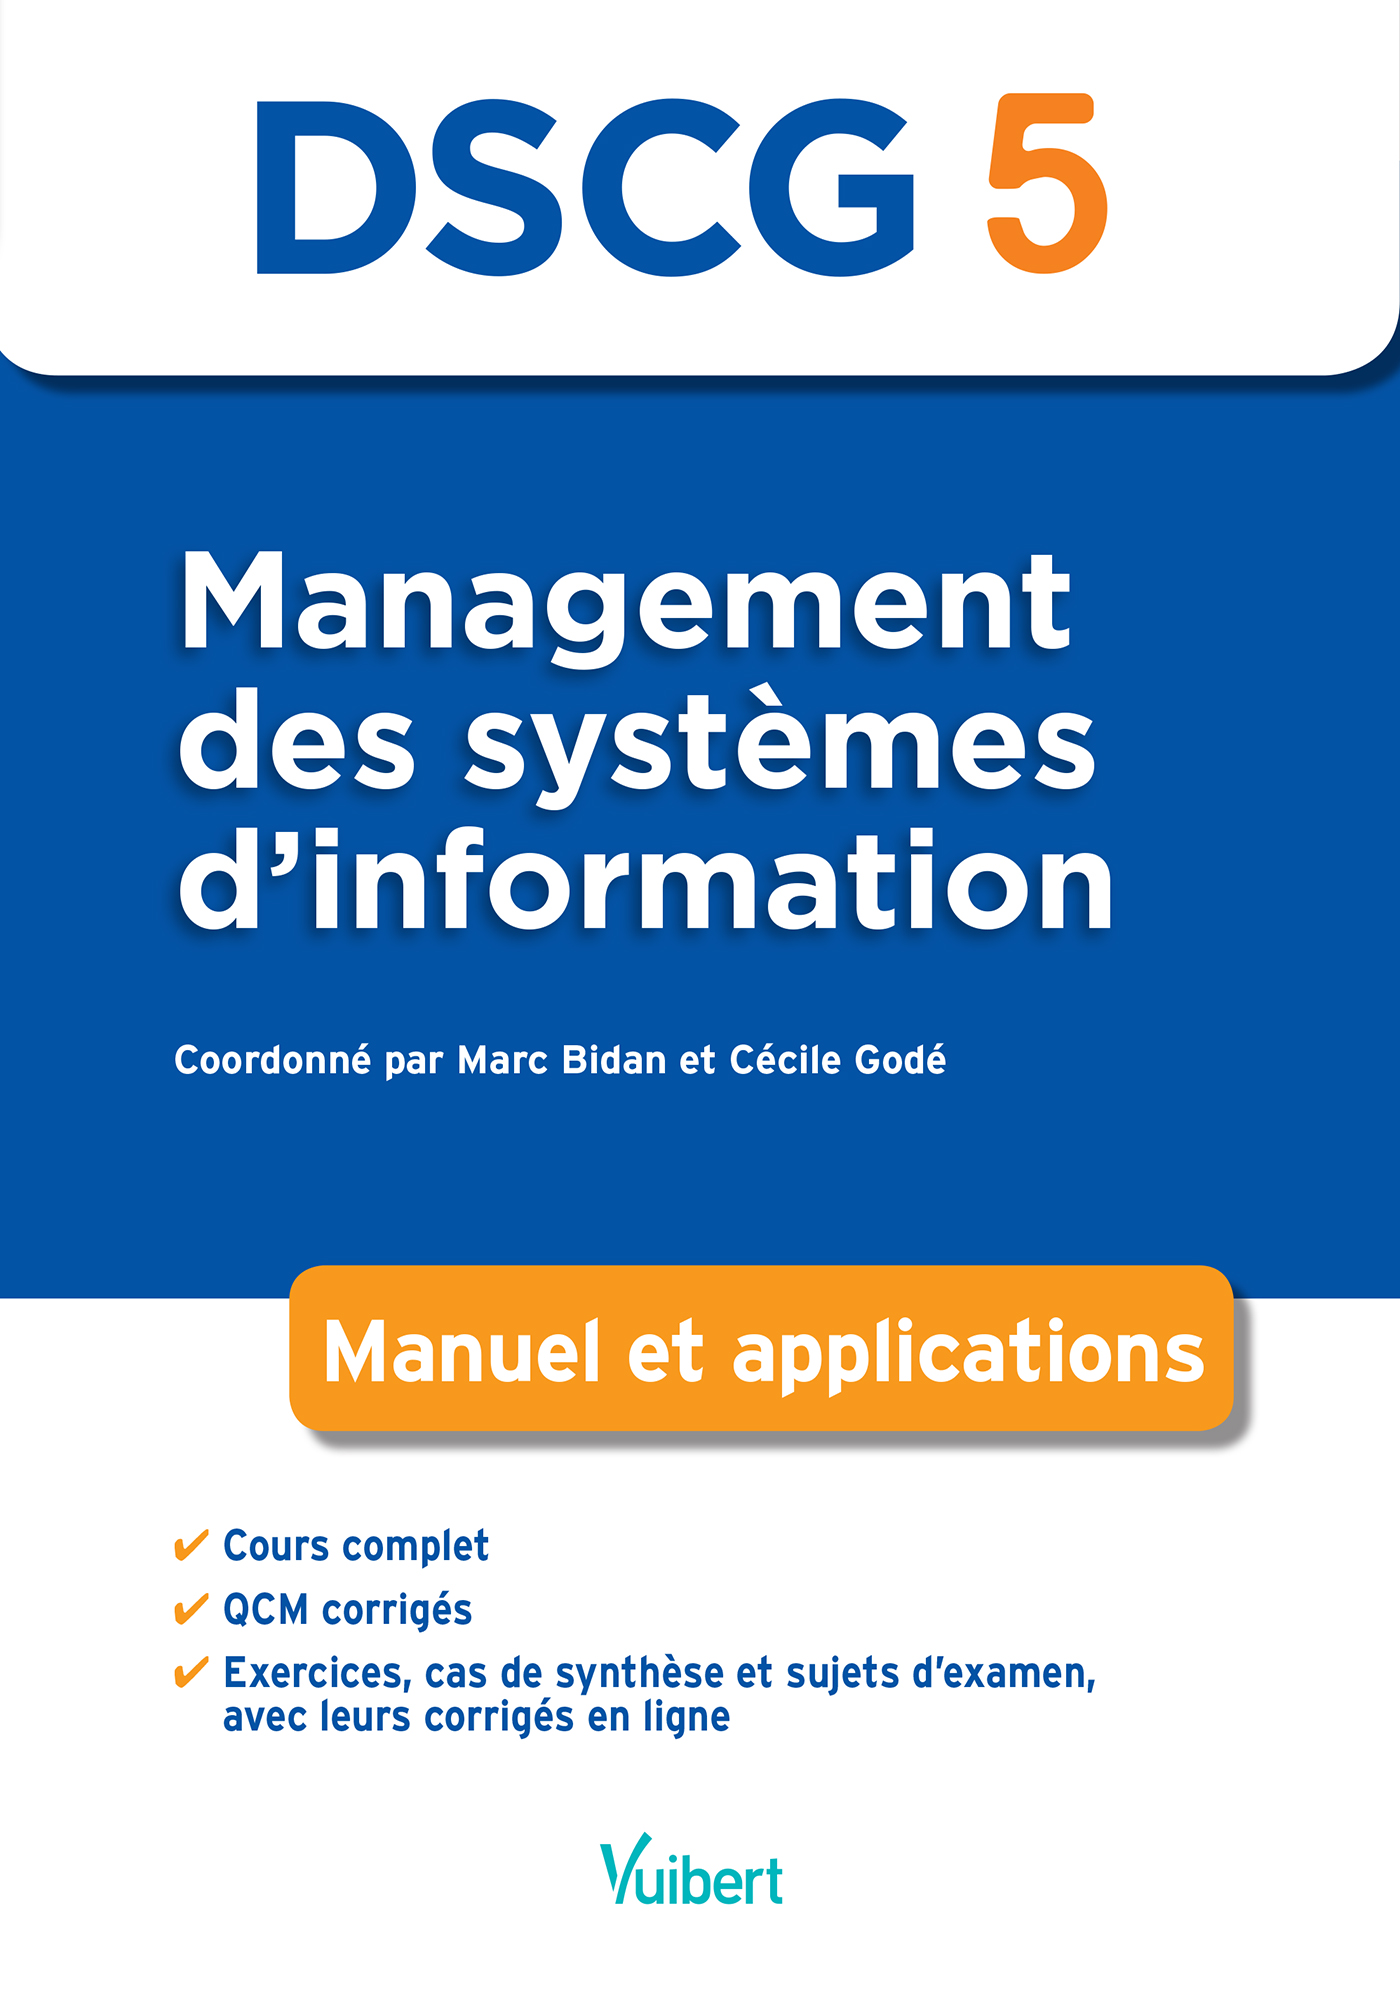 DSCG 5 Management des systèmes d'information | Vuibert